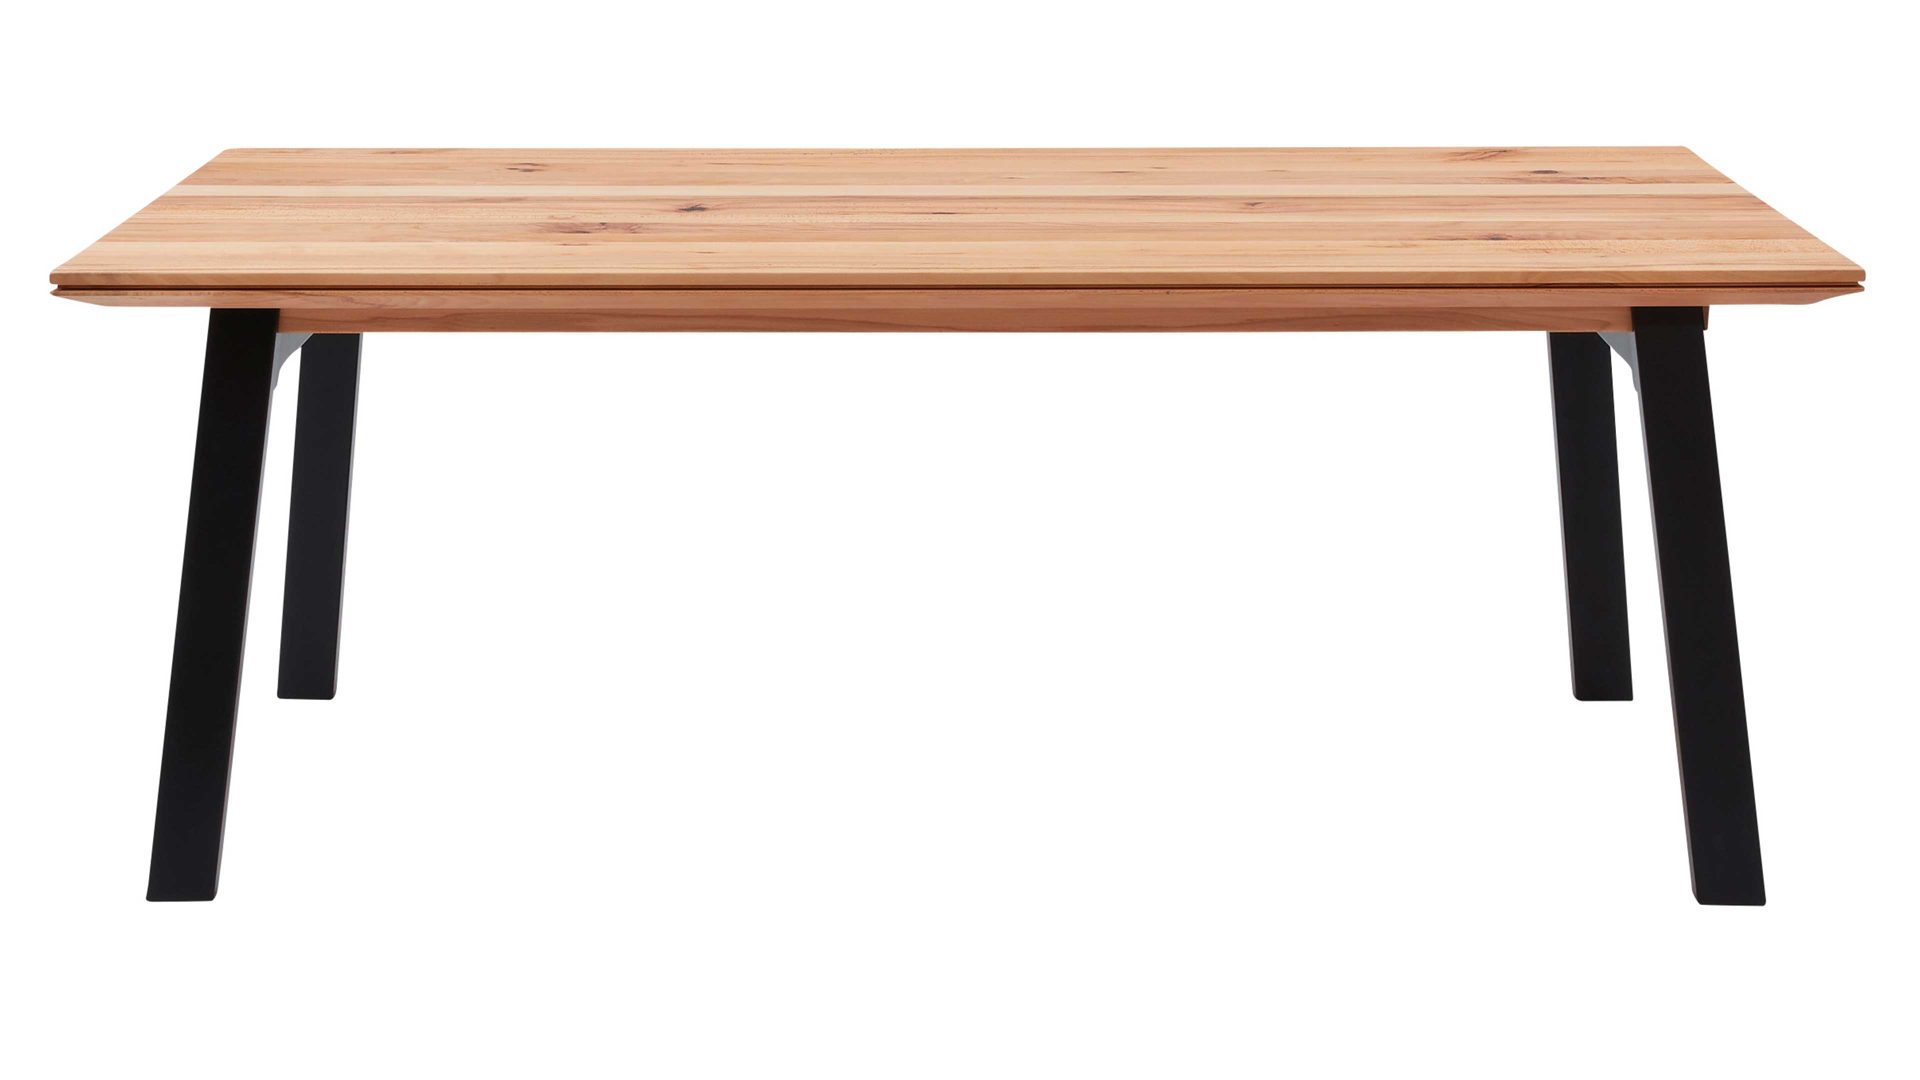 Auszugtisch Interliving aus Holz in Holzfarben Interliving Esszimmer Serie 5102 – Auszugtisch V513 Charakter-Kernbuche & schwarzes Eisen – ca. 220-270 x 100 cm